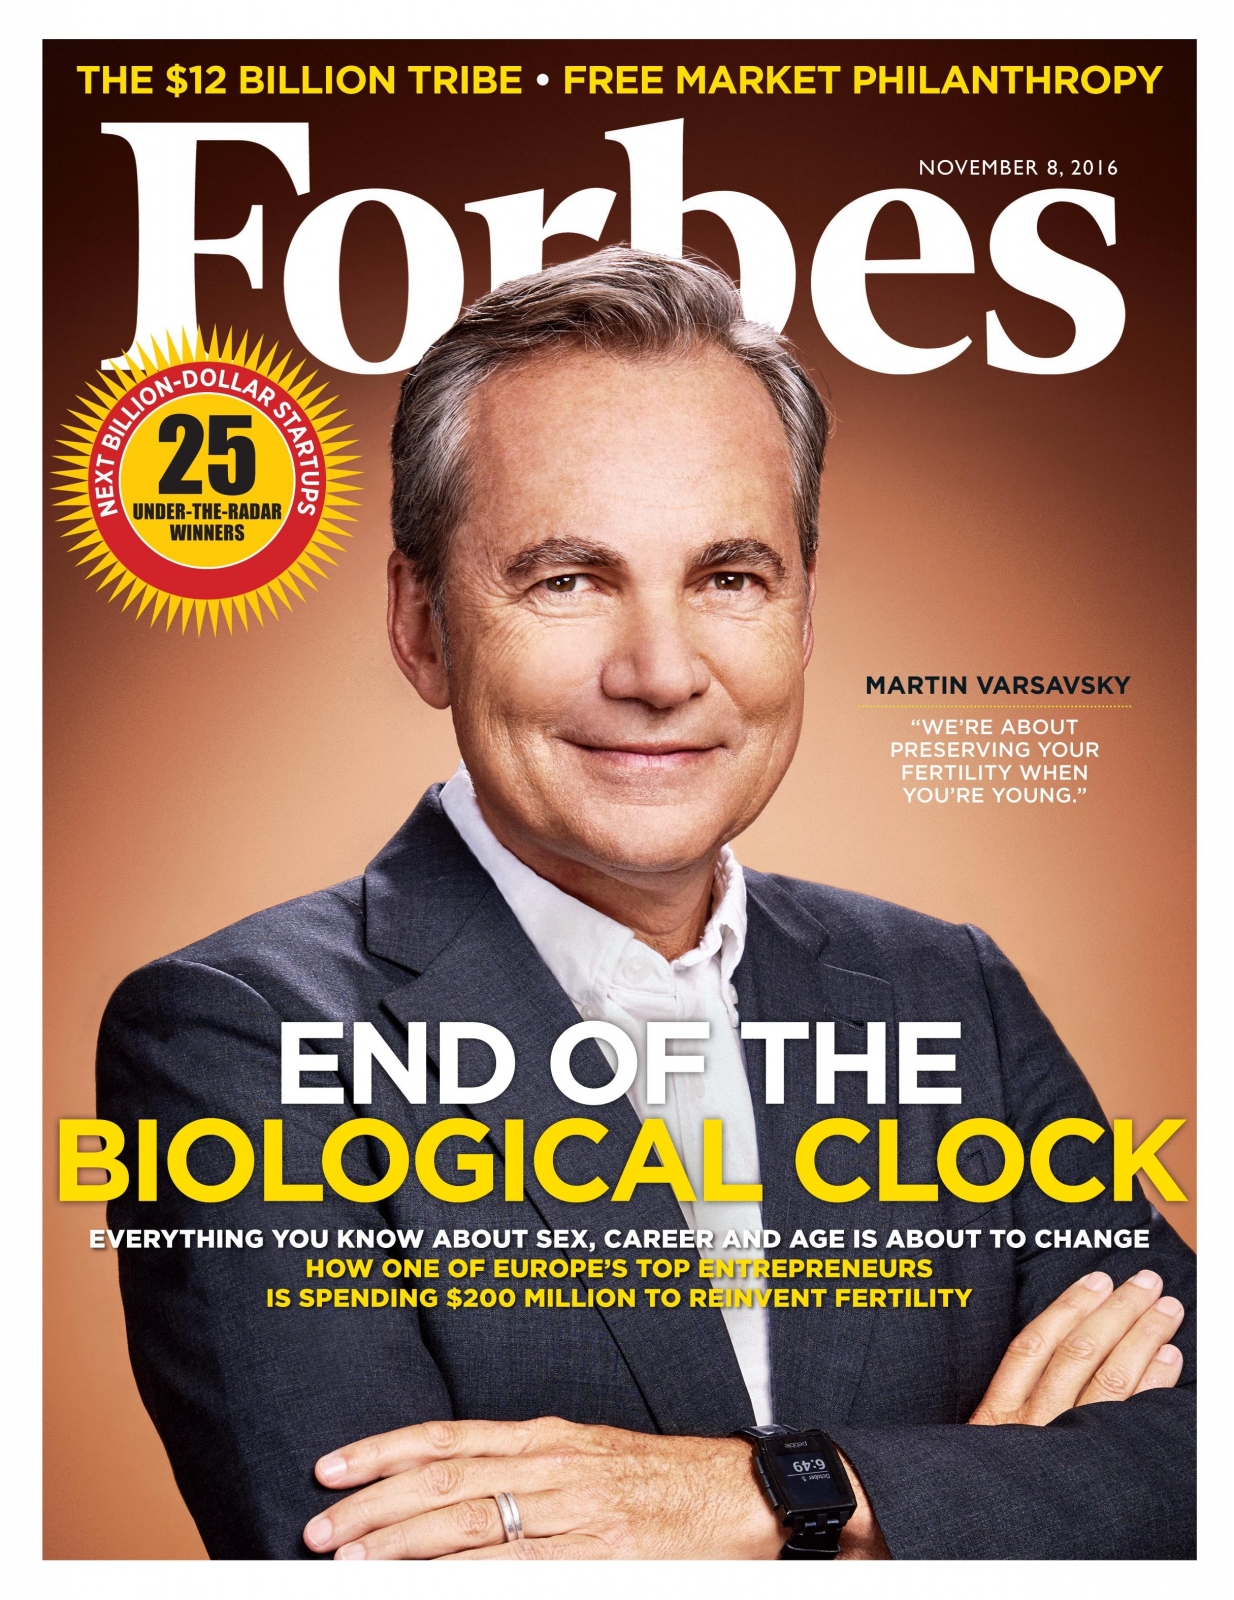 Обложка журнала Forbes